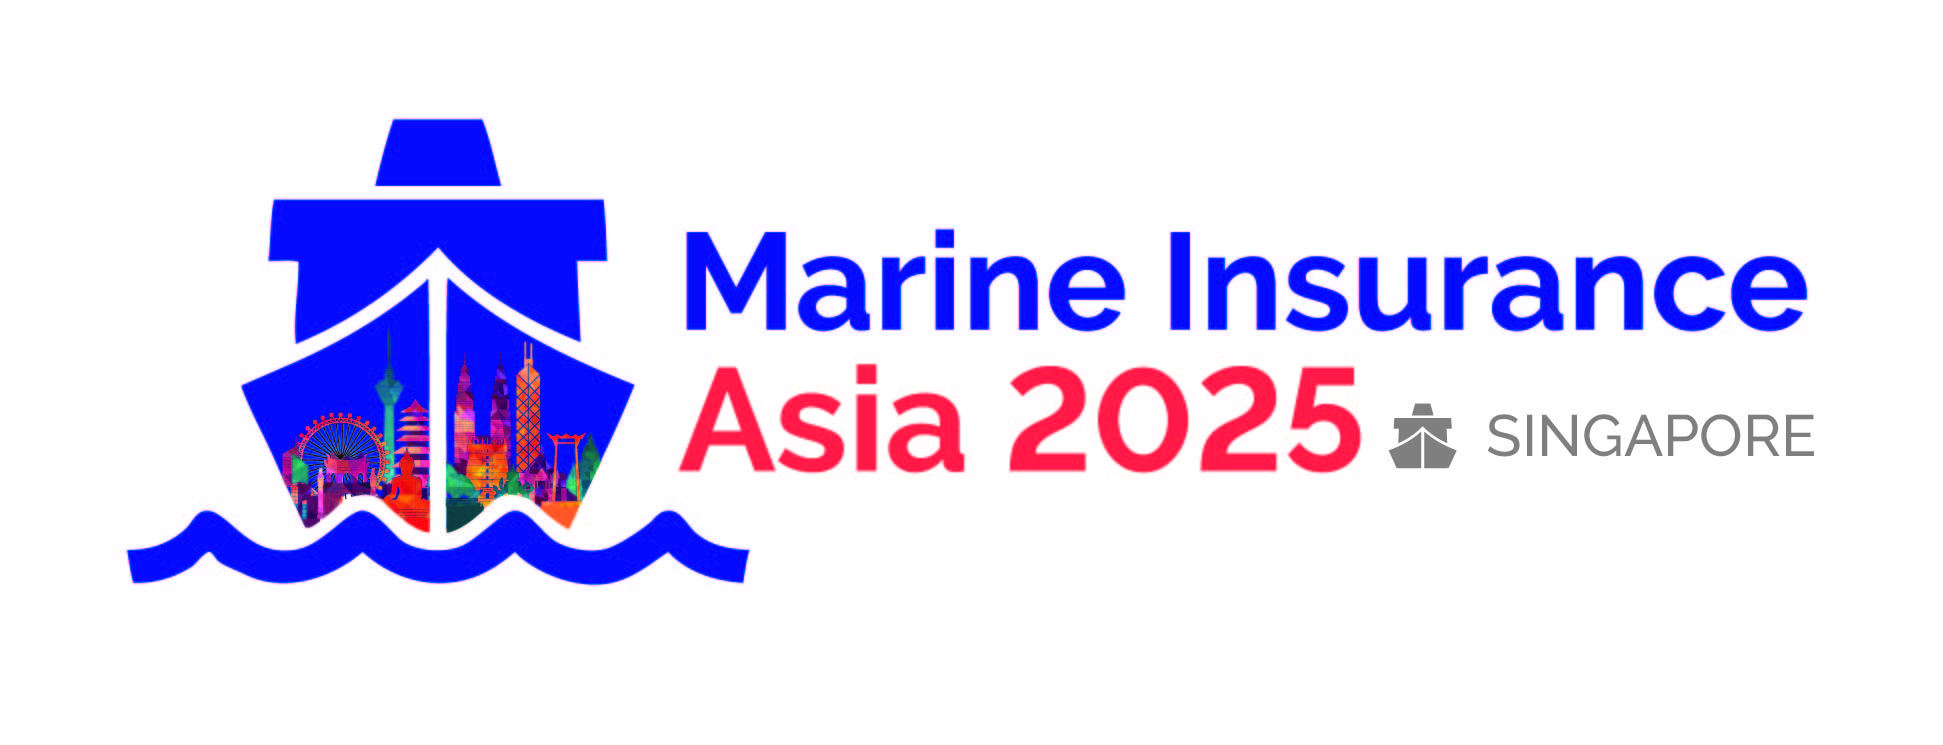 Marine Insurance Asia